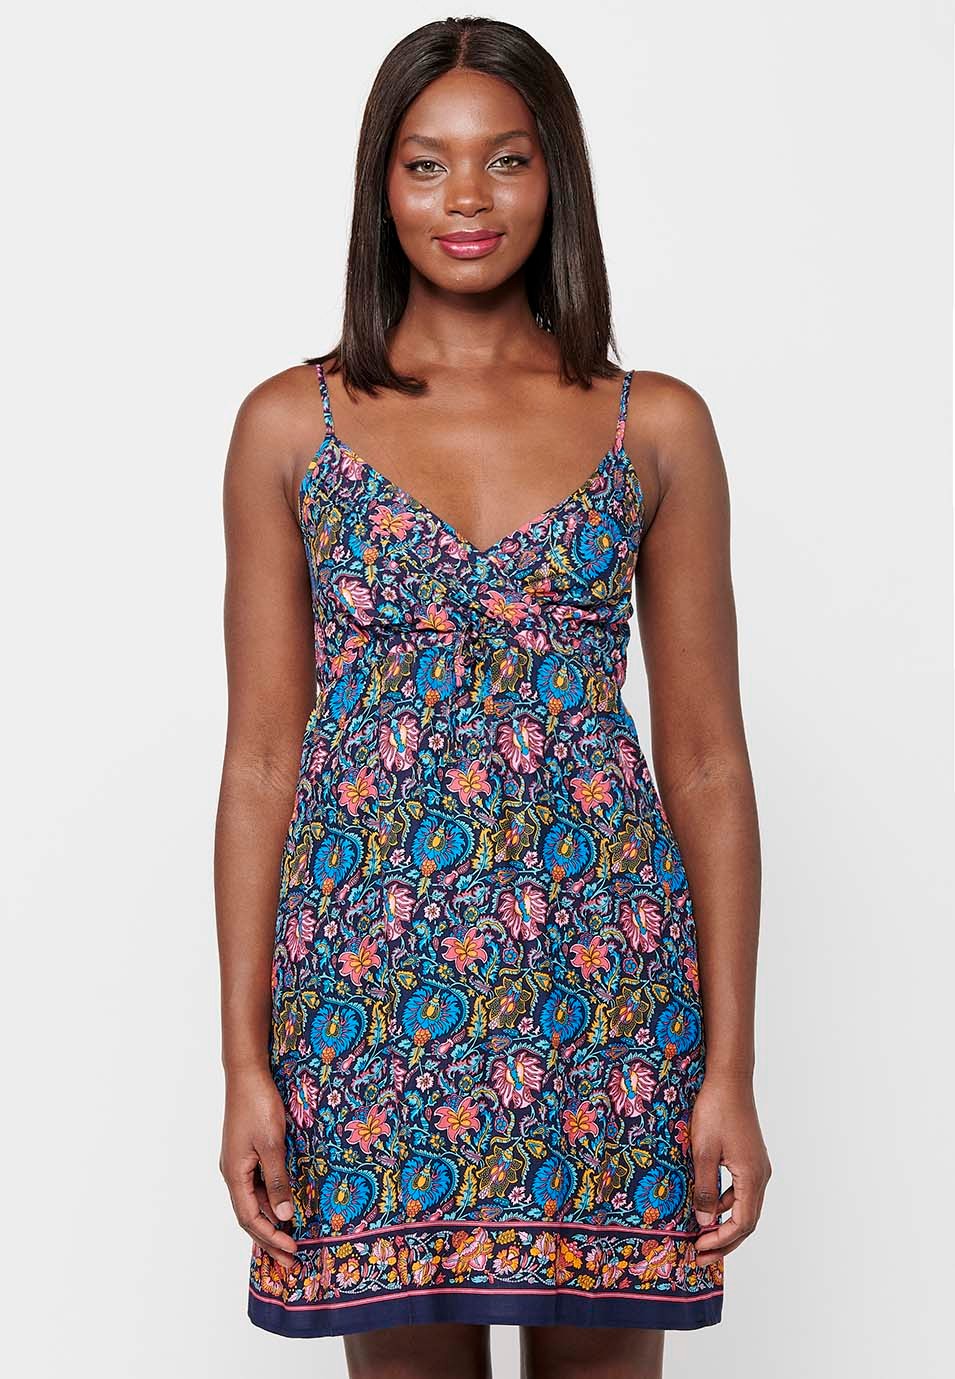 Damen-Kurzkleid mit mehrfarbigem Blumendruck, V-Ausschnitt und Trägern